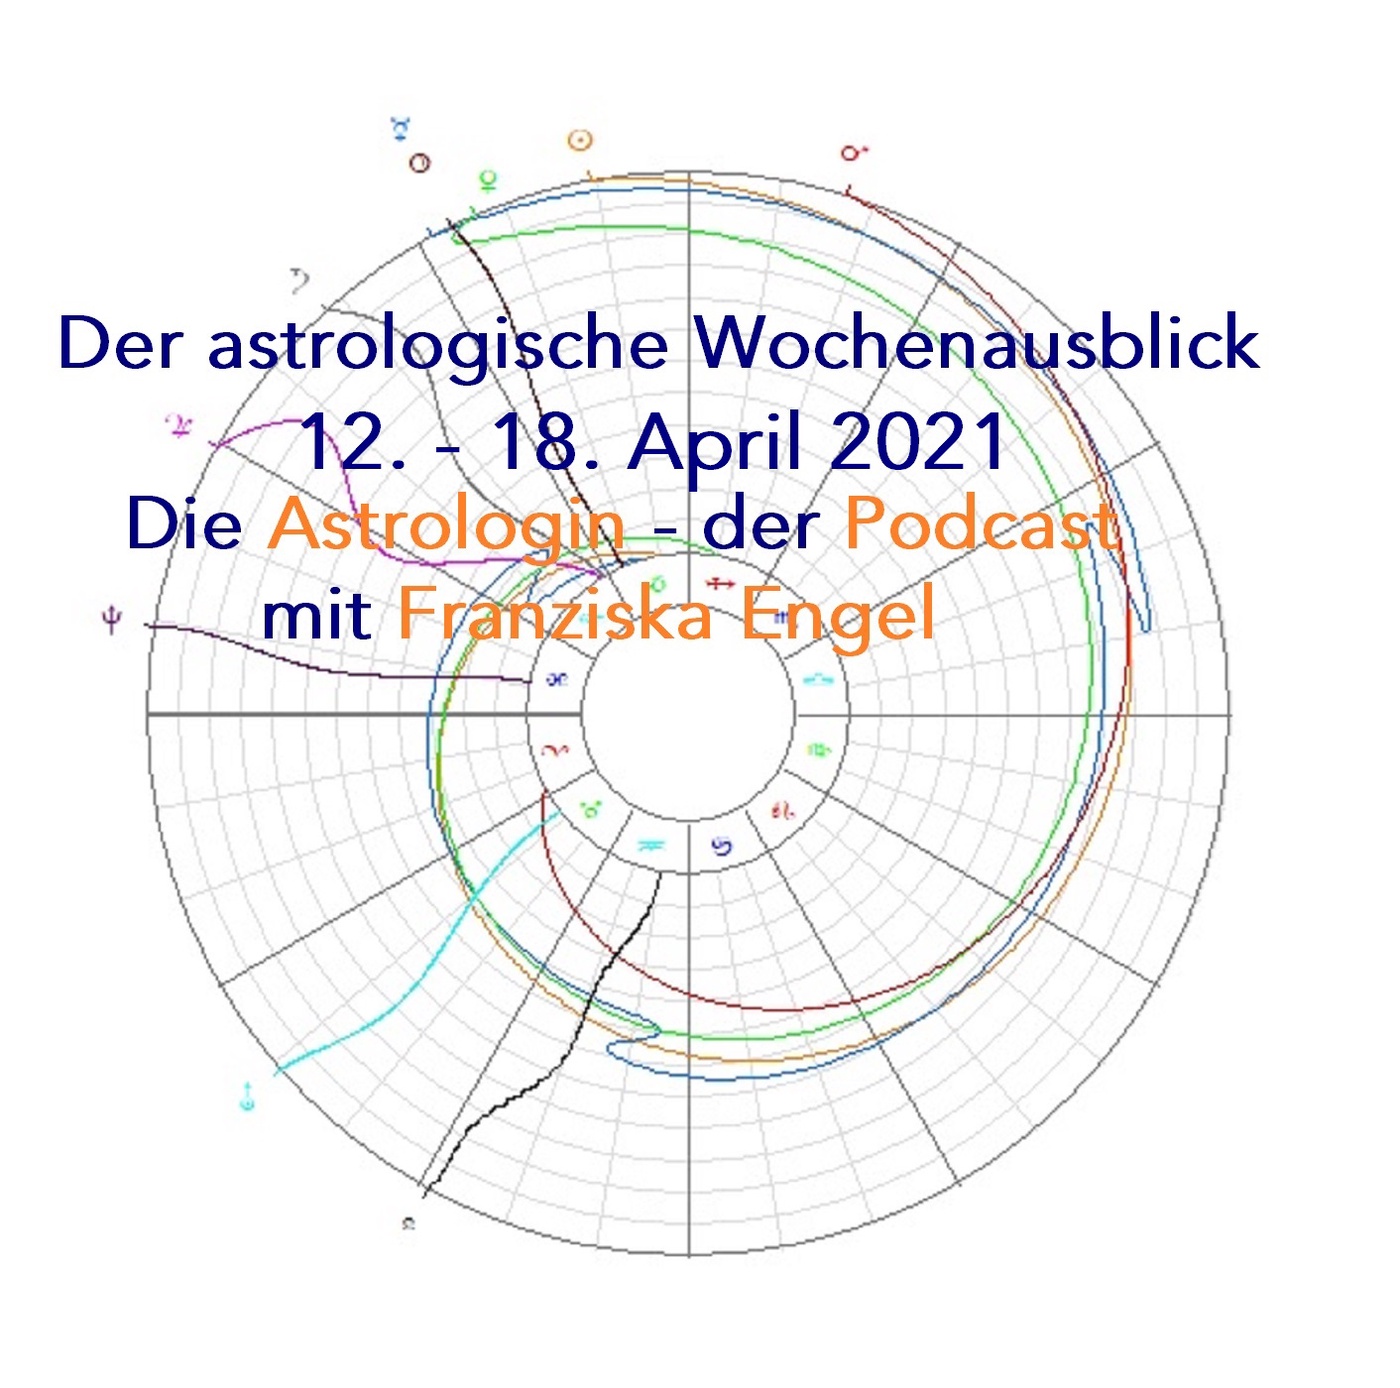 Astrologischer Wochenausblick 12. - 18. April 2021